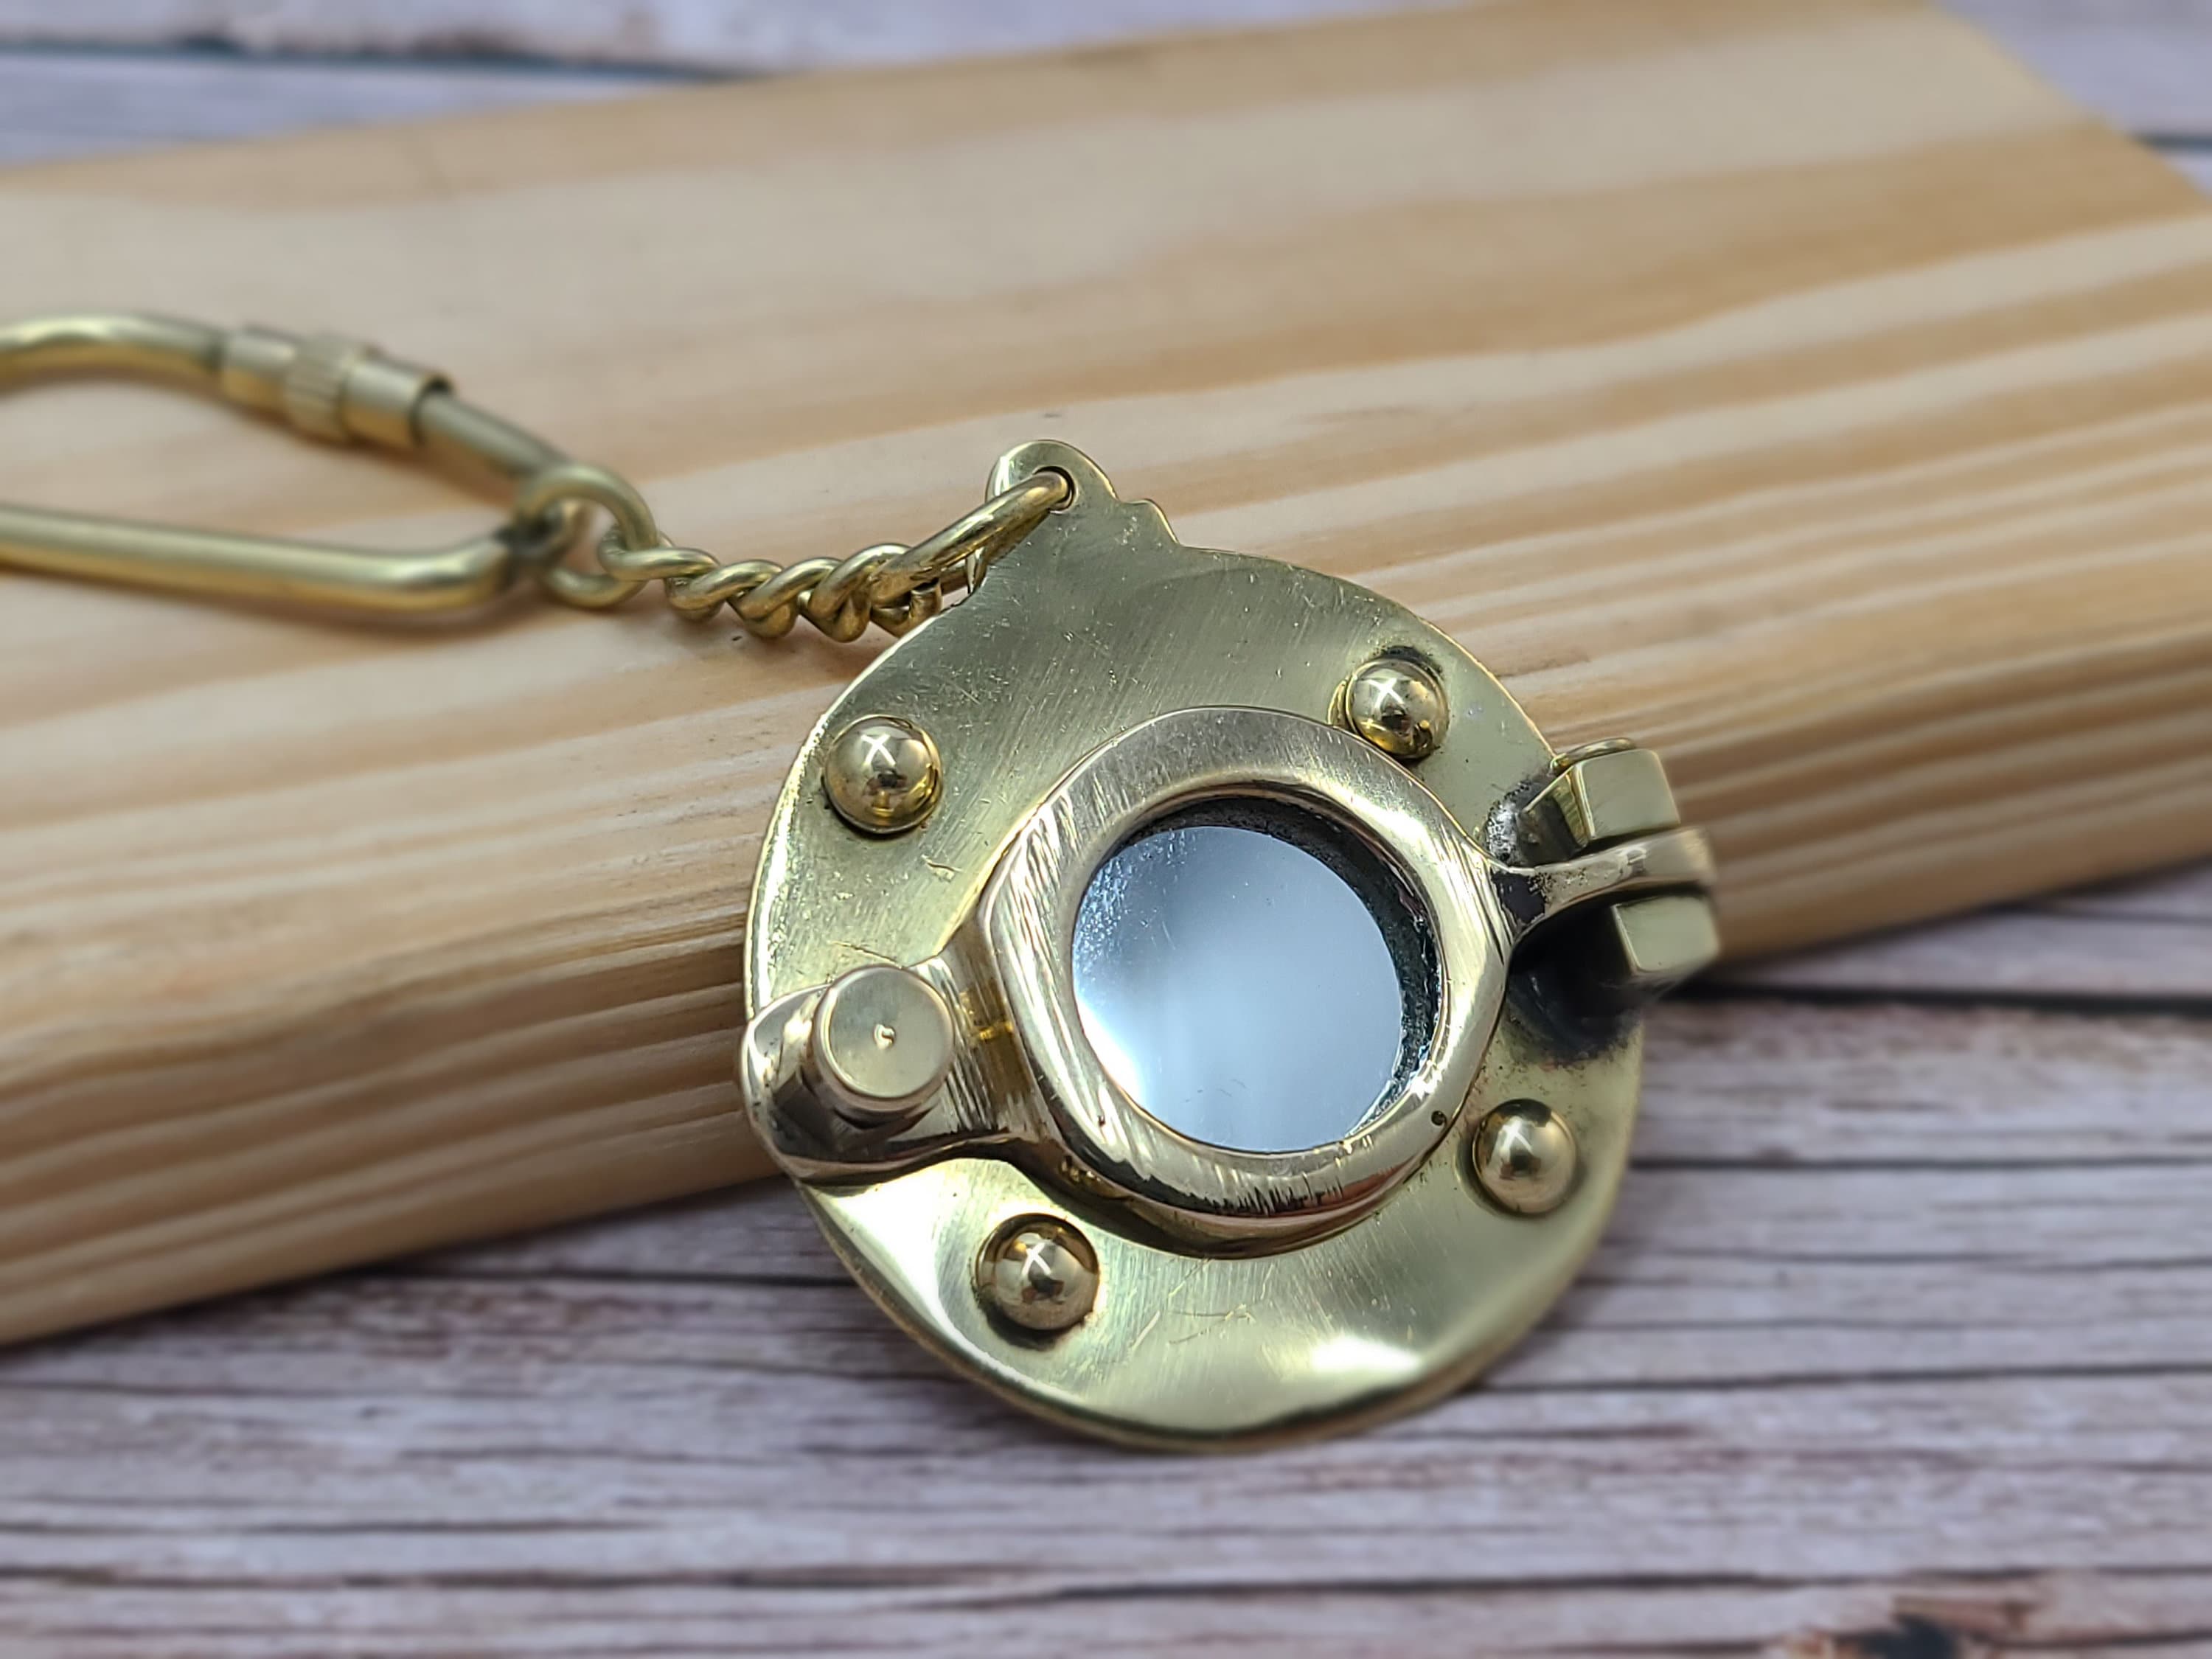 Middle India Handicrafts Porthole Keychain, Brass Porthole Keychain, Solid Brass Porthole Mirror Key Chain Nautical Ship Porthole Key Ring